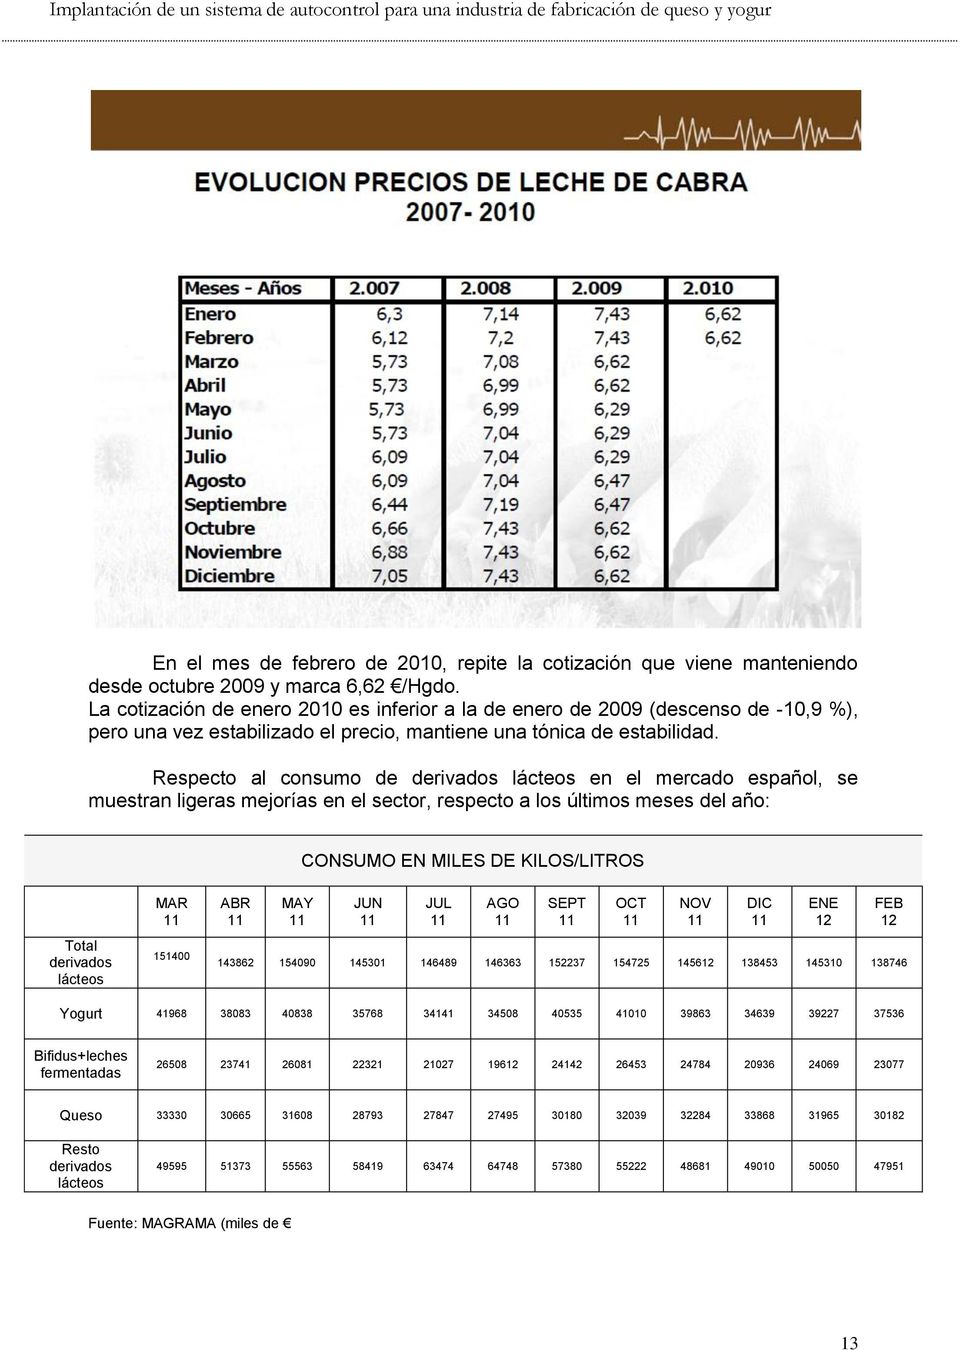 Respecto al consumo de derivados lácteos en el mercado español, se muestran ligeras mejorías en el sector, respecto a los últimos meses del año: CONSUMO EN MILES DE KILOS/LITROS Total derivados